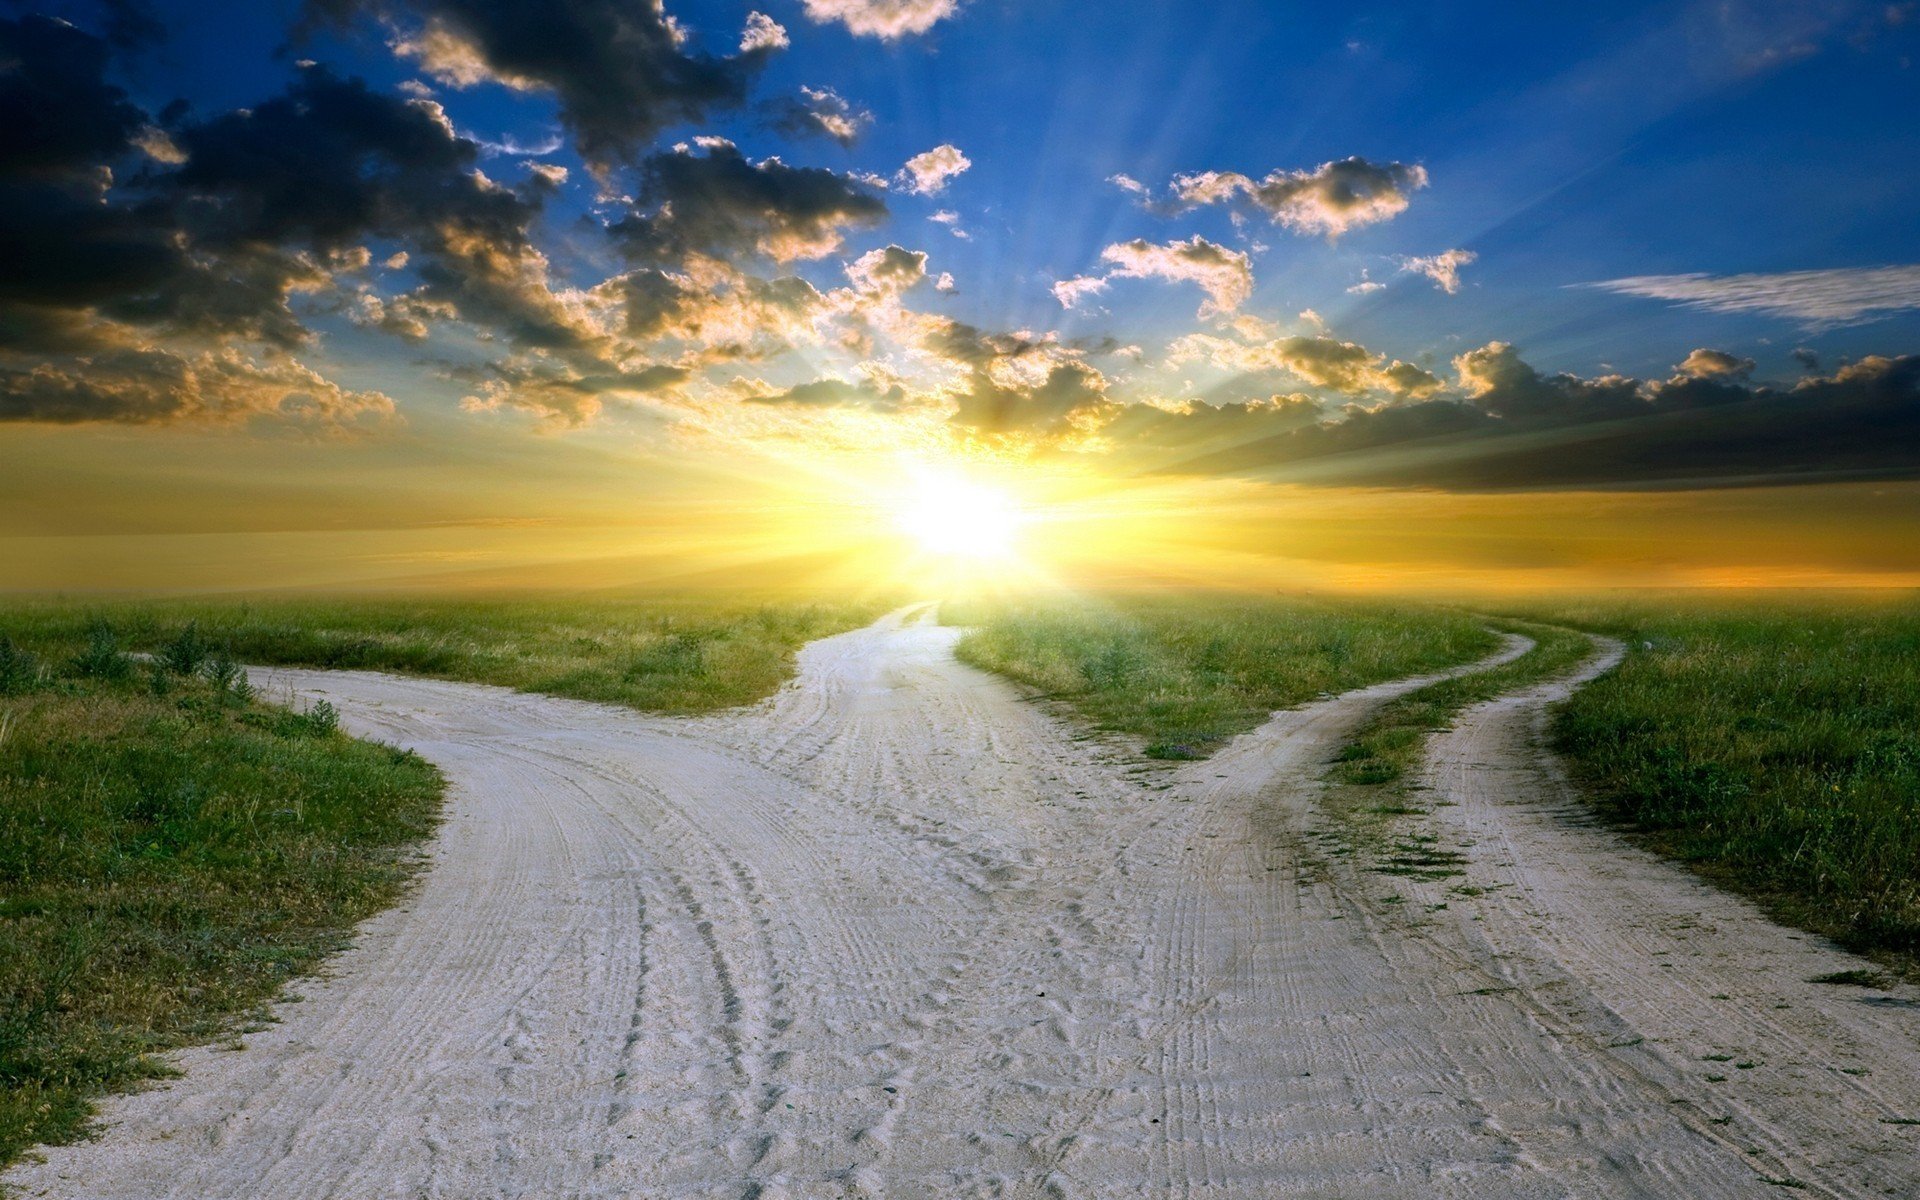 Небеса так чисты освещают нам дорогу. Распутье дорог. Жизненные дороги. Солнце на дороге. Развилка дорог.